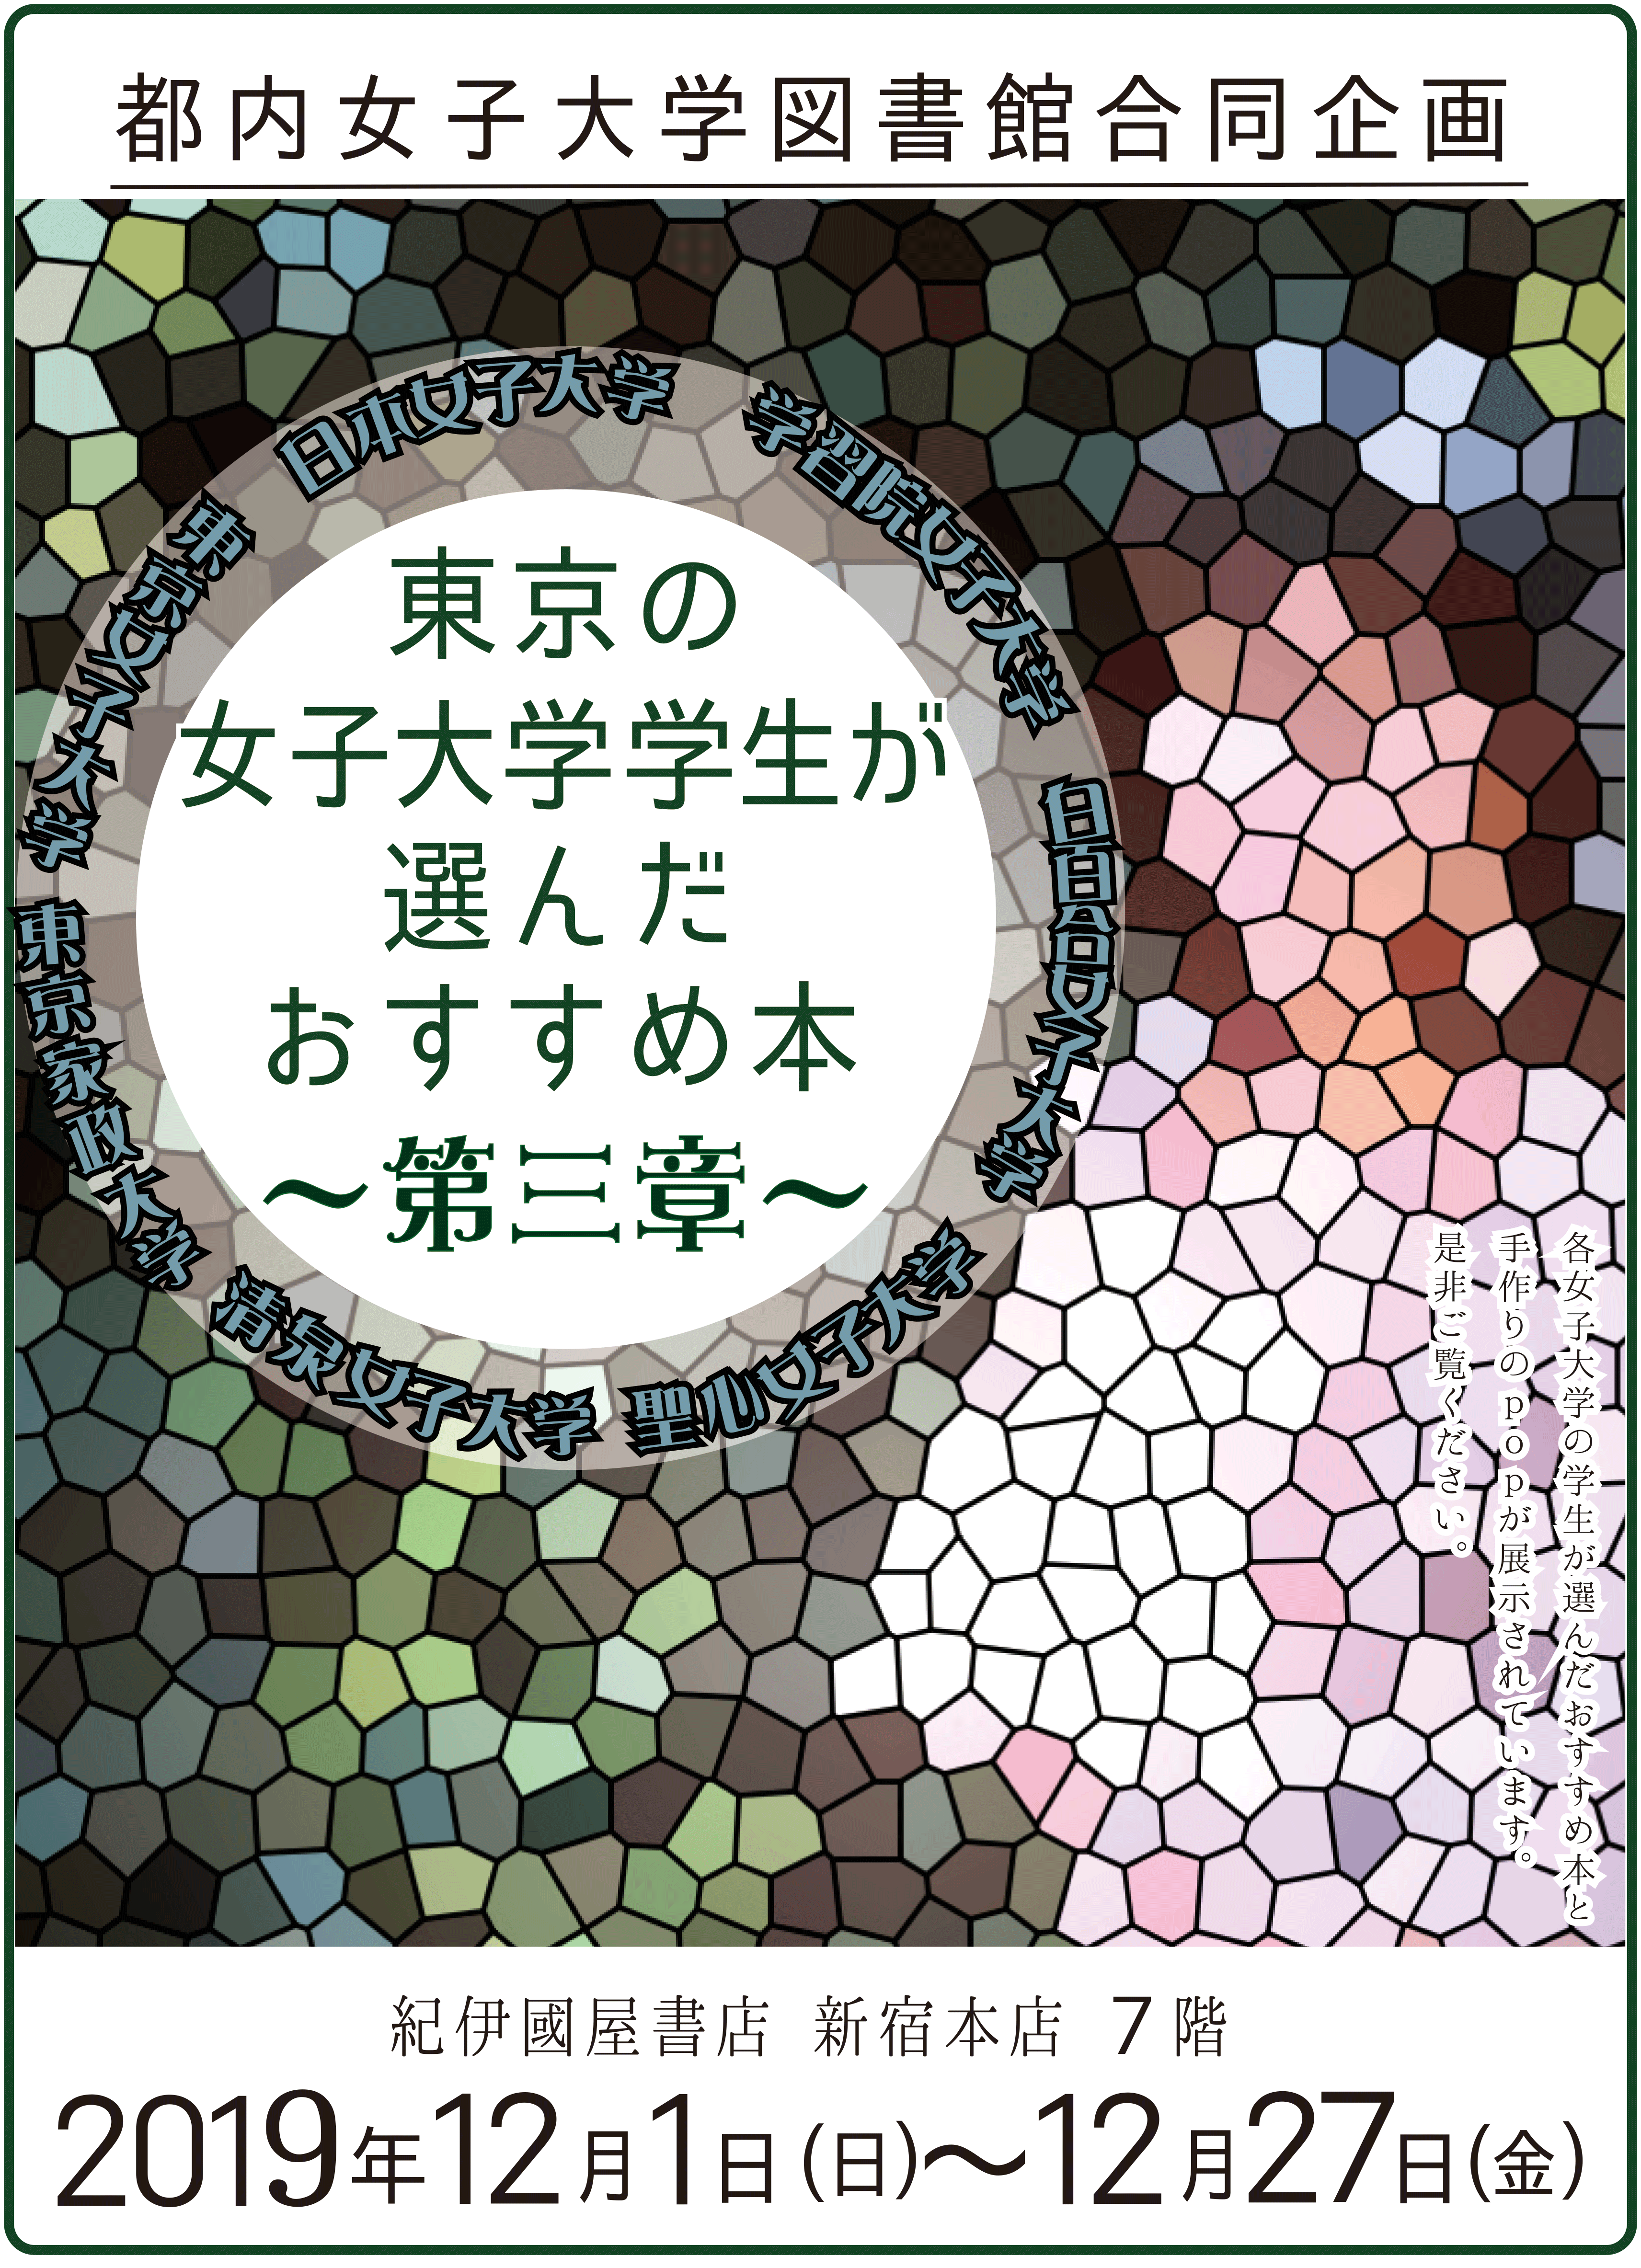 本年も開催！都内の女子大学図書館合同企画「東京の女子大学学生が選んだおすすめ本」フェア 